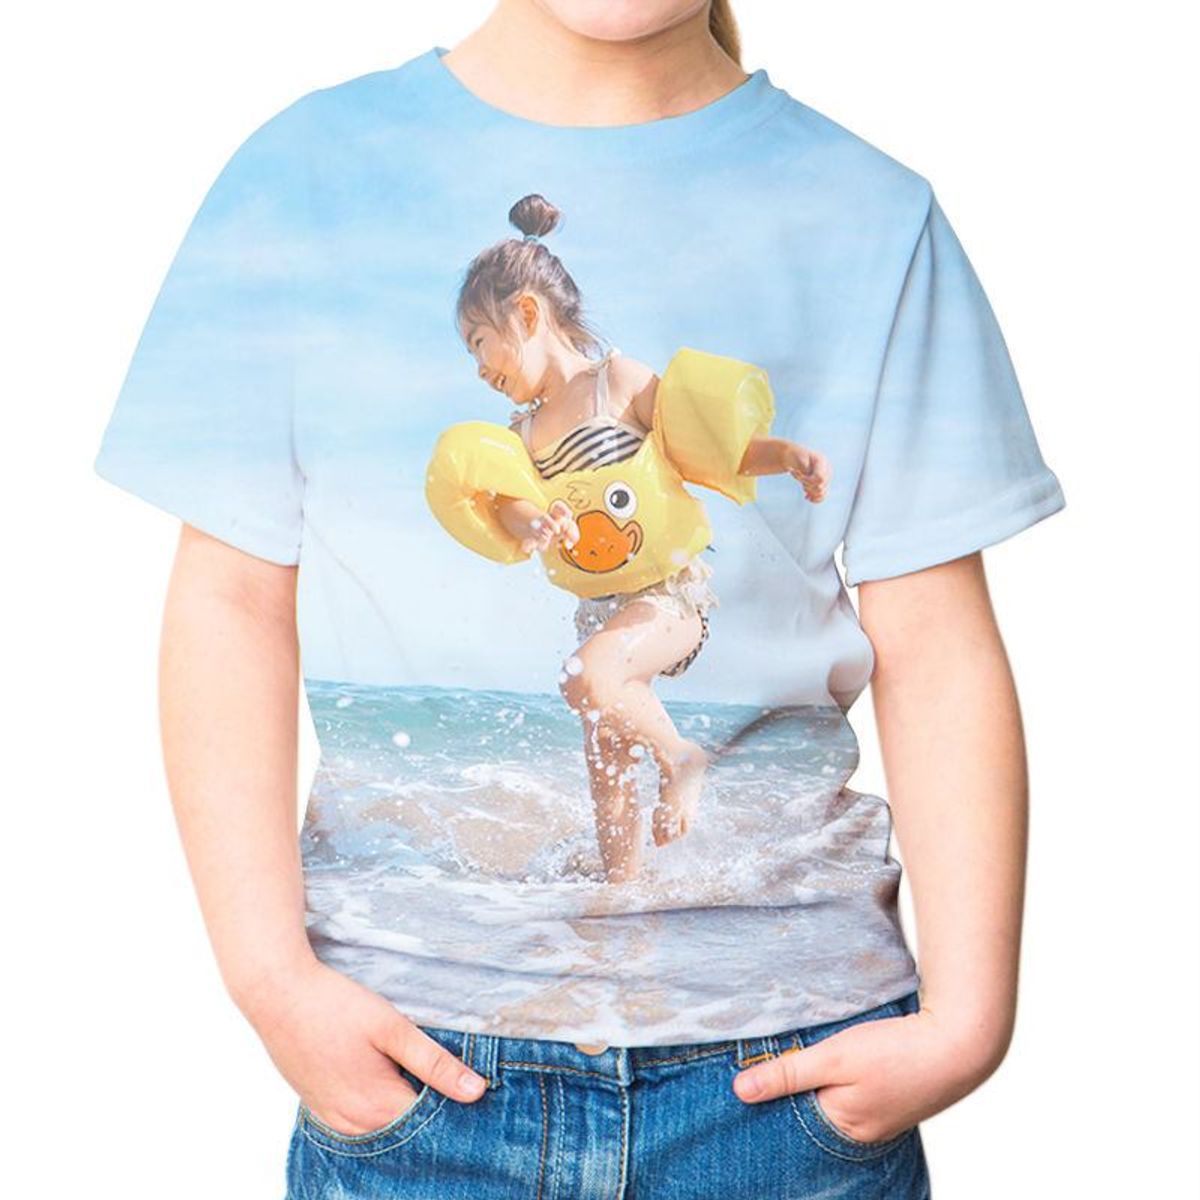 Children's T shirt swimming